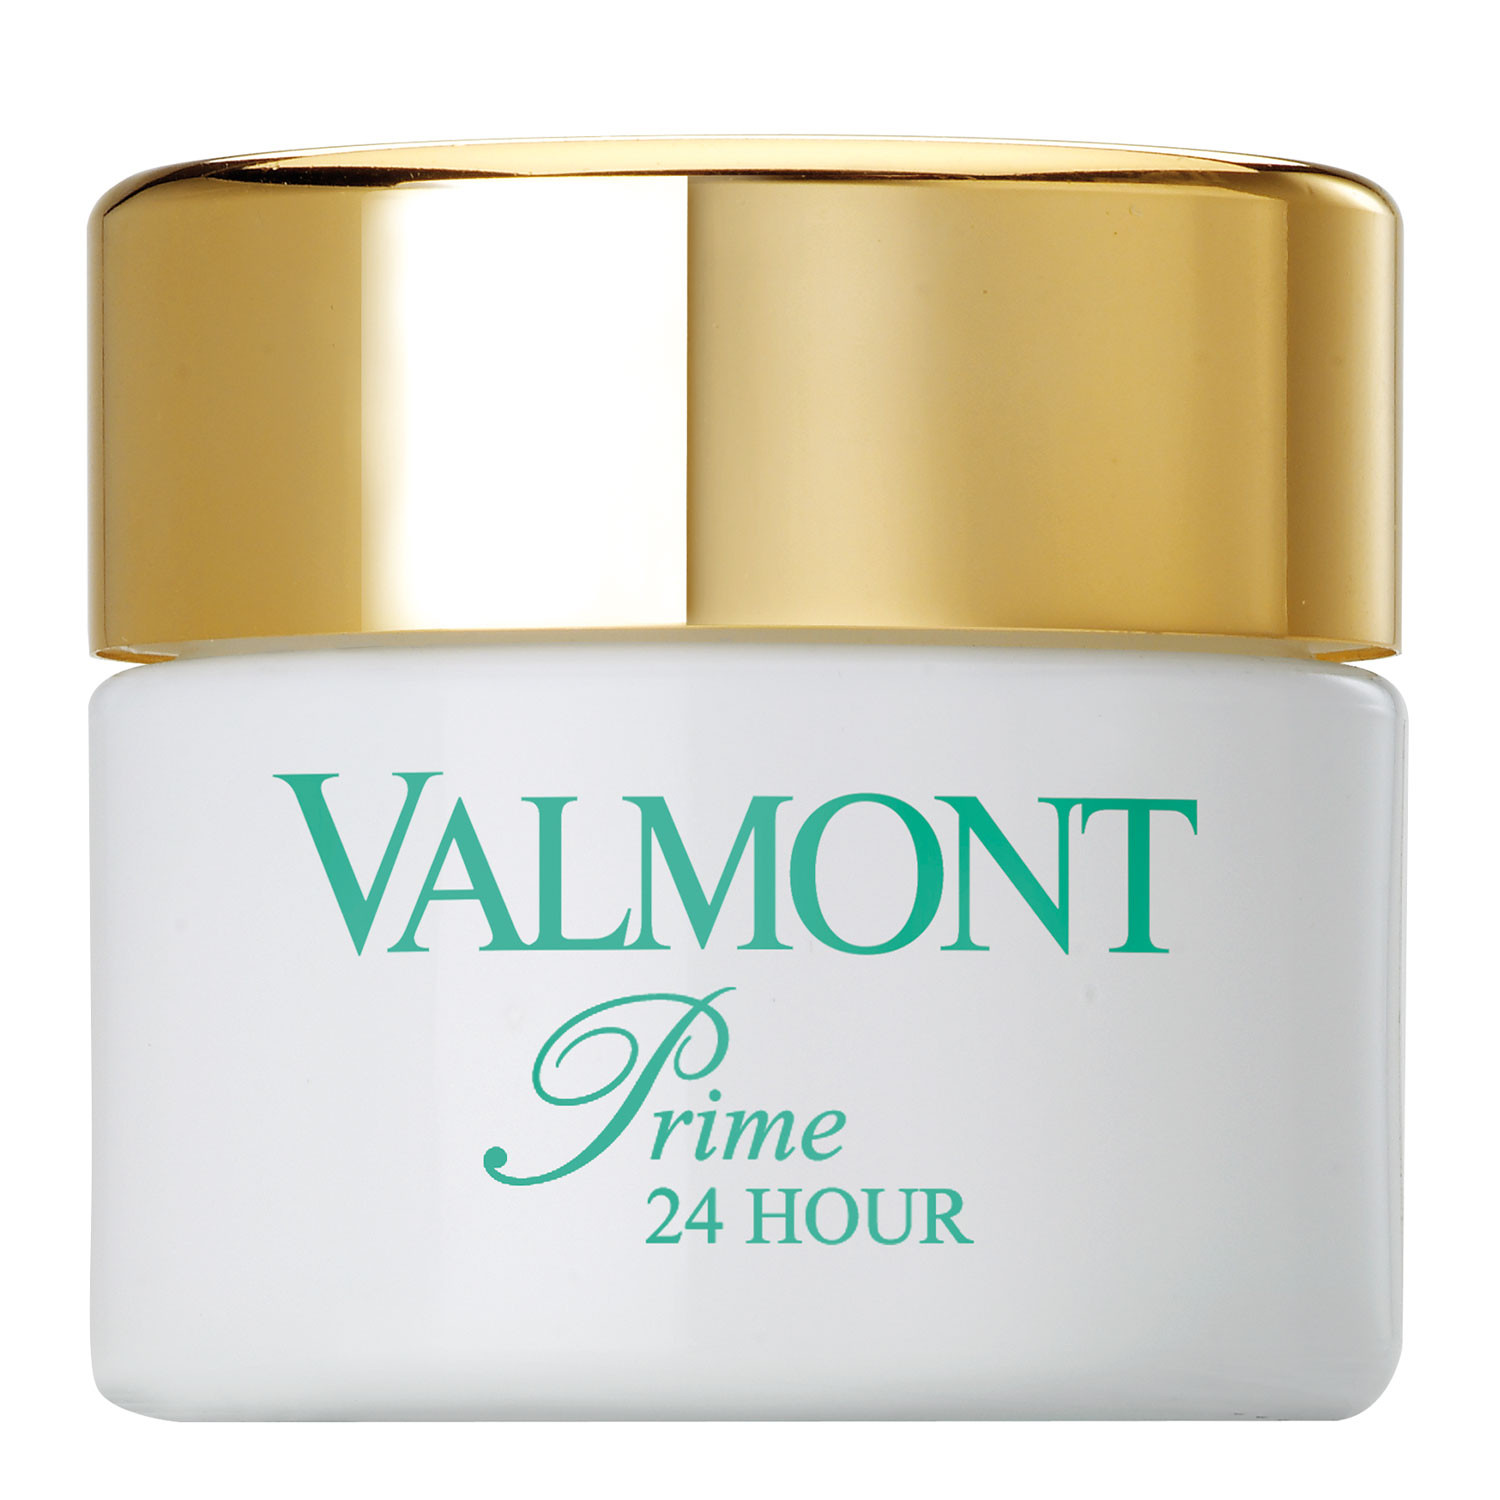 Valmont Prime 24 Hour Клеточный базовый увлажняющий крем для кожи лица